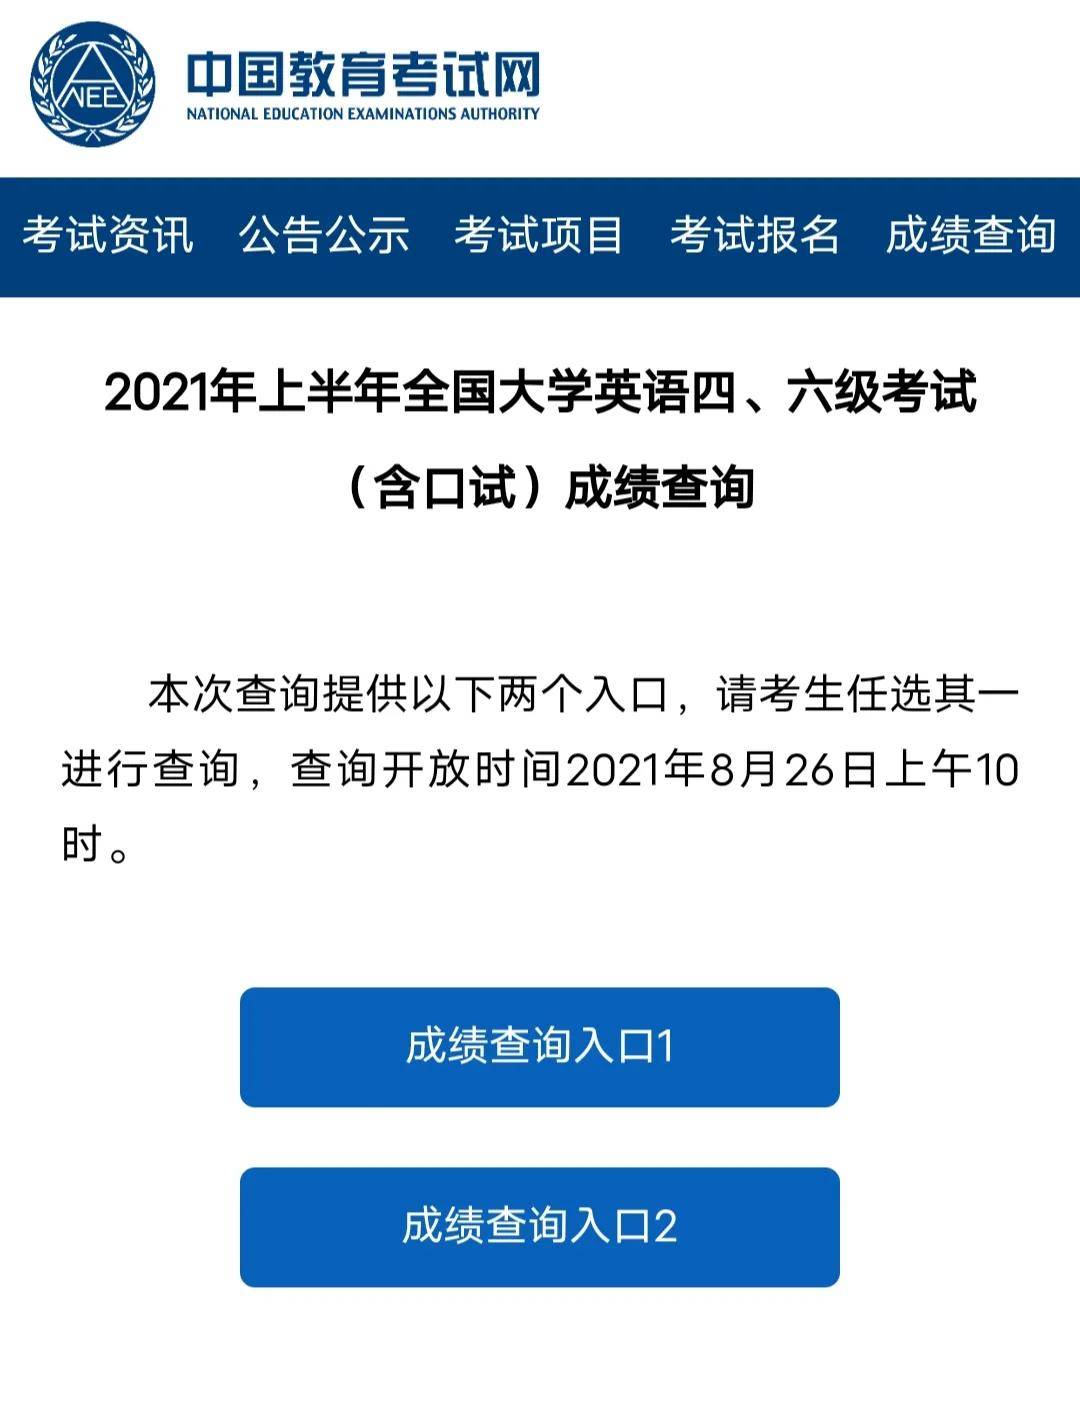 neea.edu.cn/cet2.中国教育考试网1.